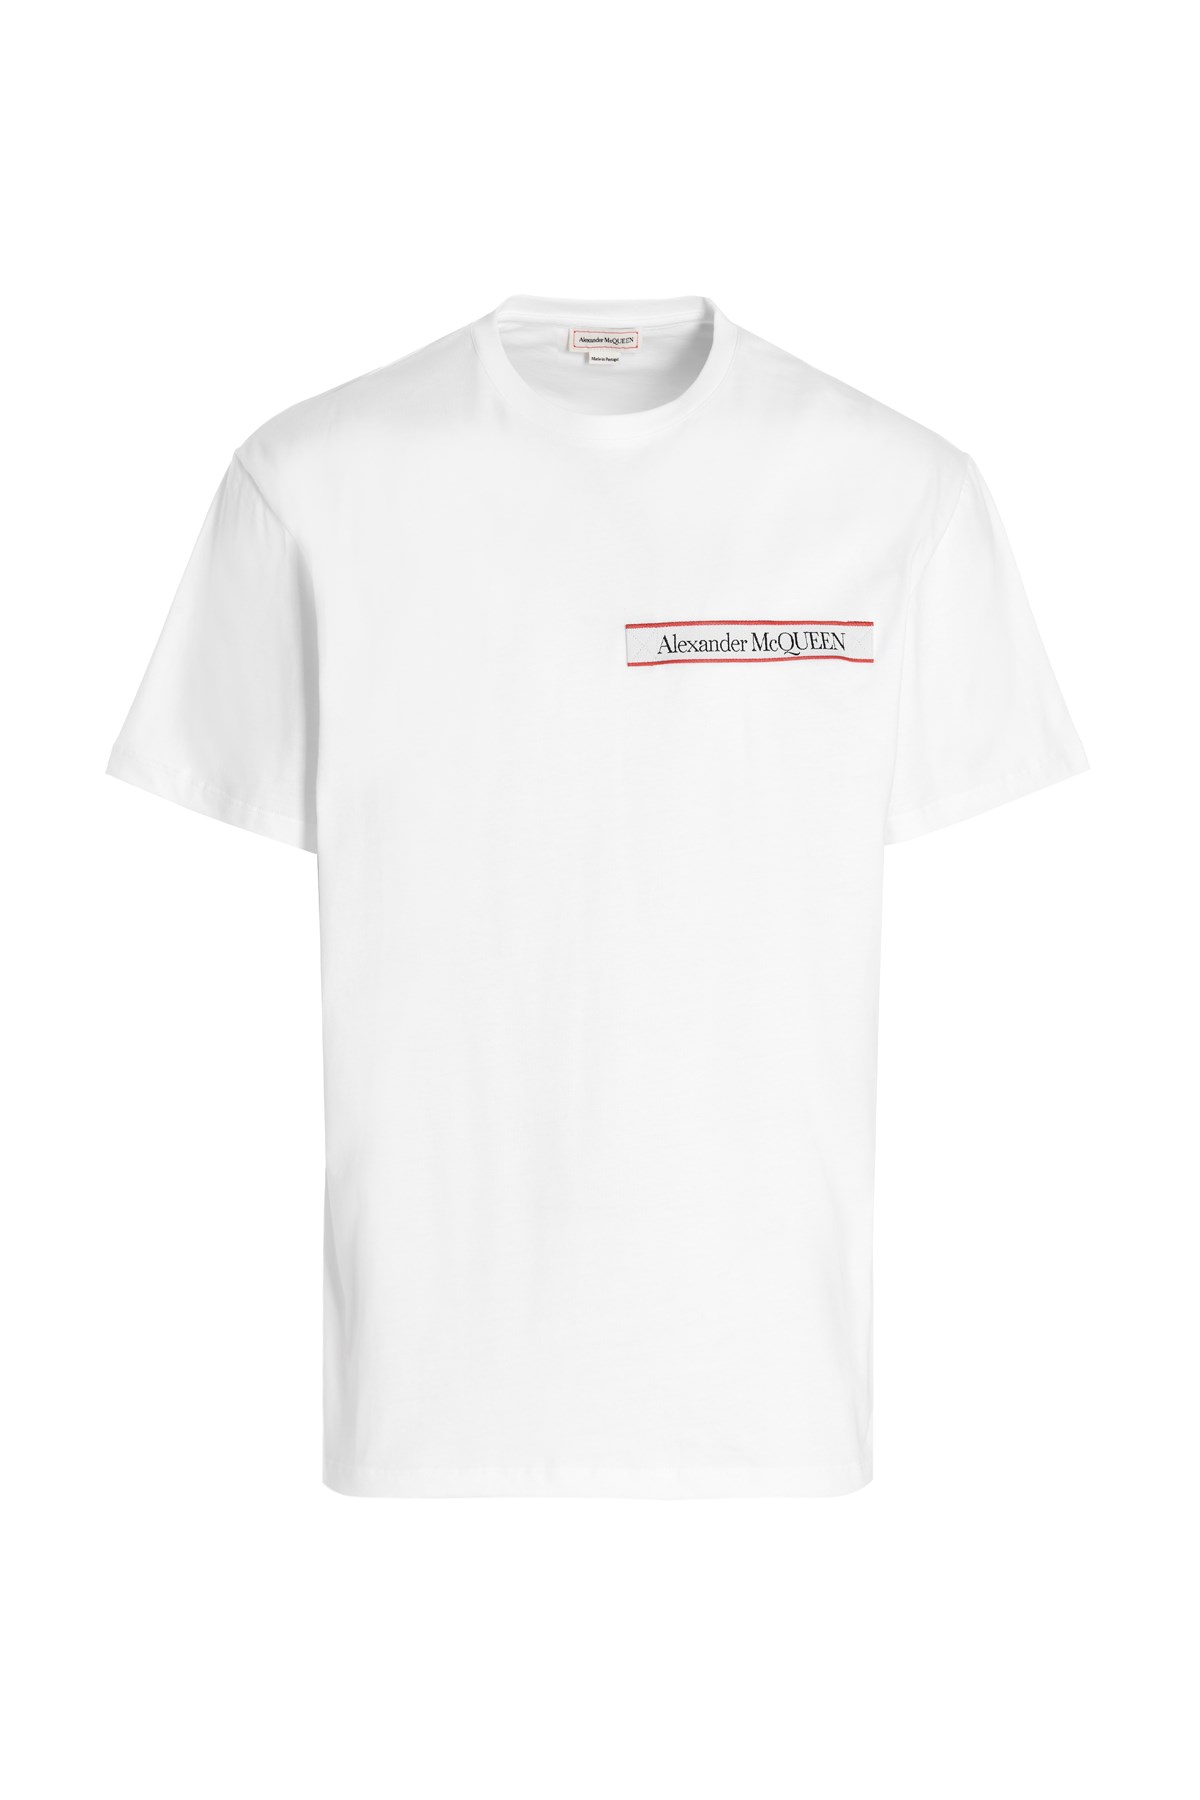 ALEXANDER MCQUEEN Logo Tape T-Shirt